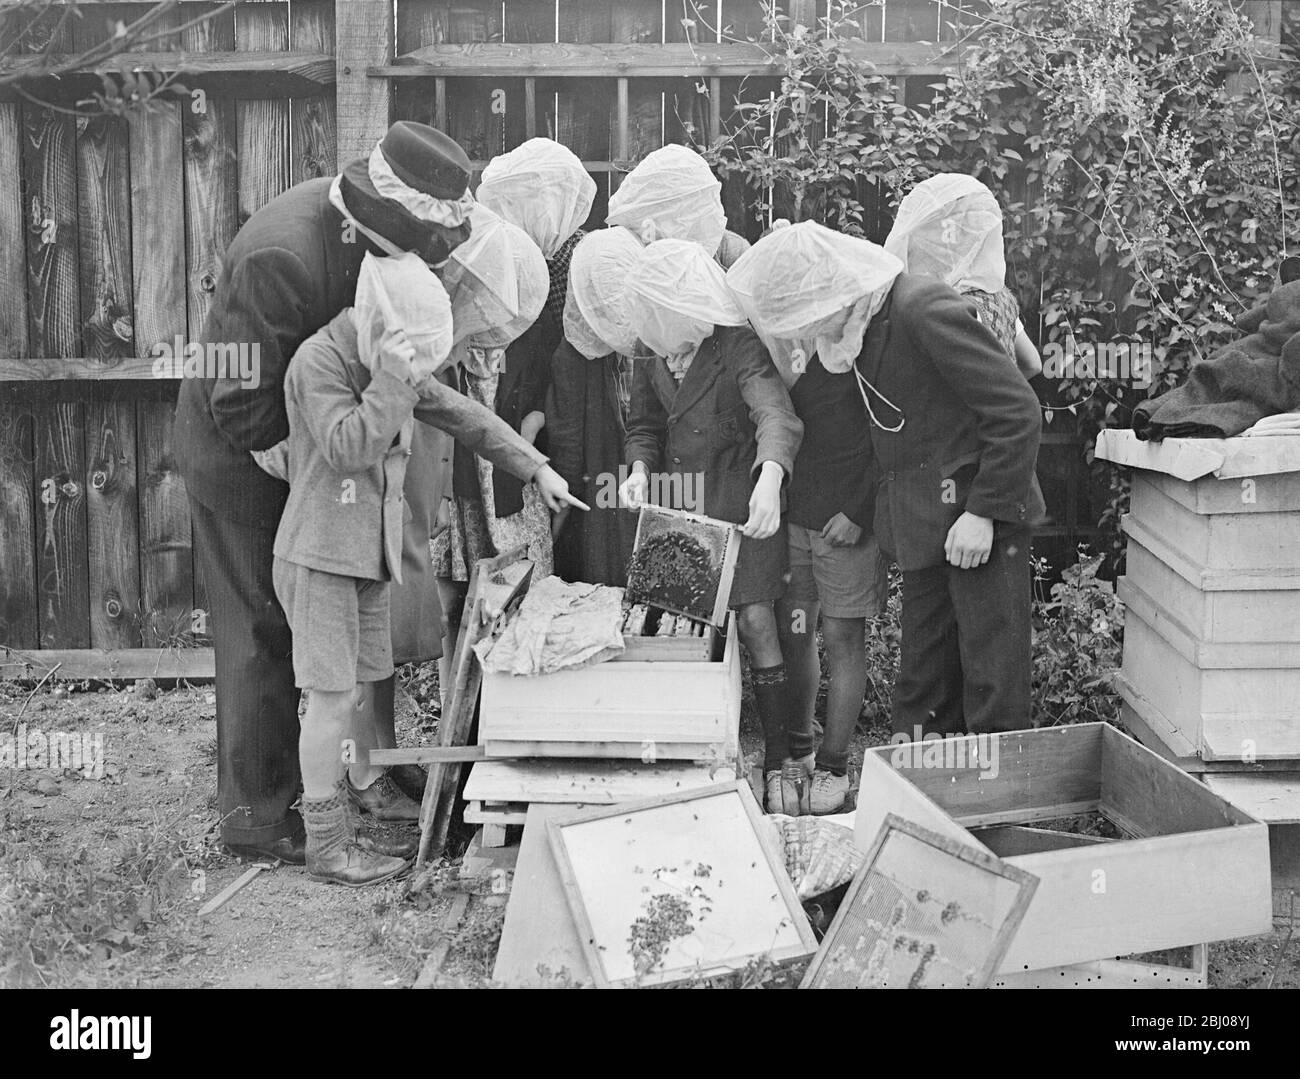 Une classe apiculture est une innovation à Wood Lane, Shepherd's Bush, l'école en plein air de Londres. Les élèves sont protégés par des masques de gaze et manipulent les abeilles sans crainte. La classe qui regarde comme une ruche est ouverte. La masse sombre au sommet du cadre est composée de cire et de miel sur lesquels vivent les abeilles pendant l'hiver. - 1er septembre 1937 Banque D'Images